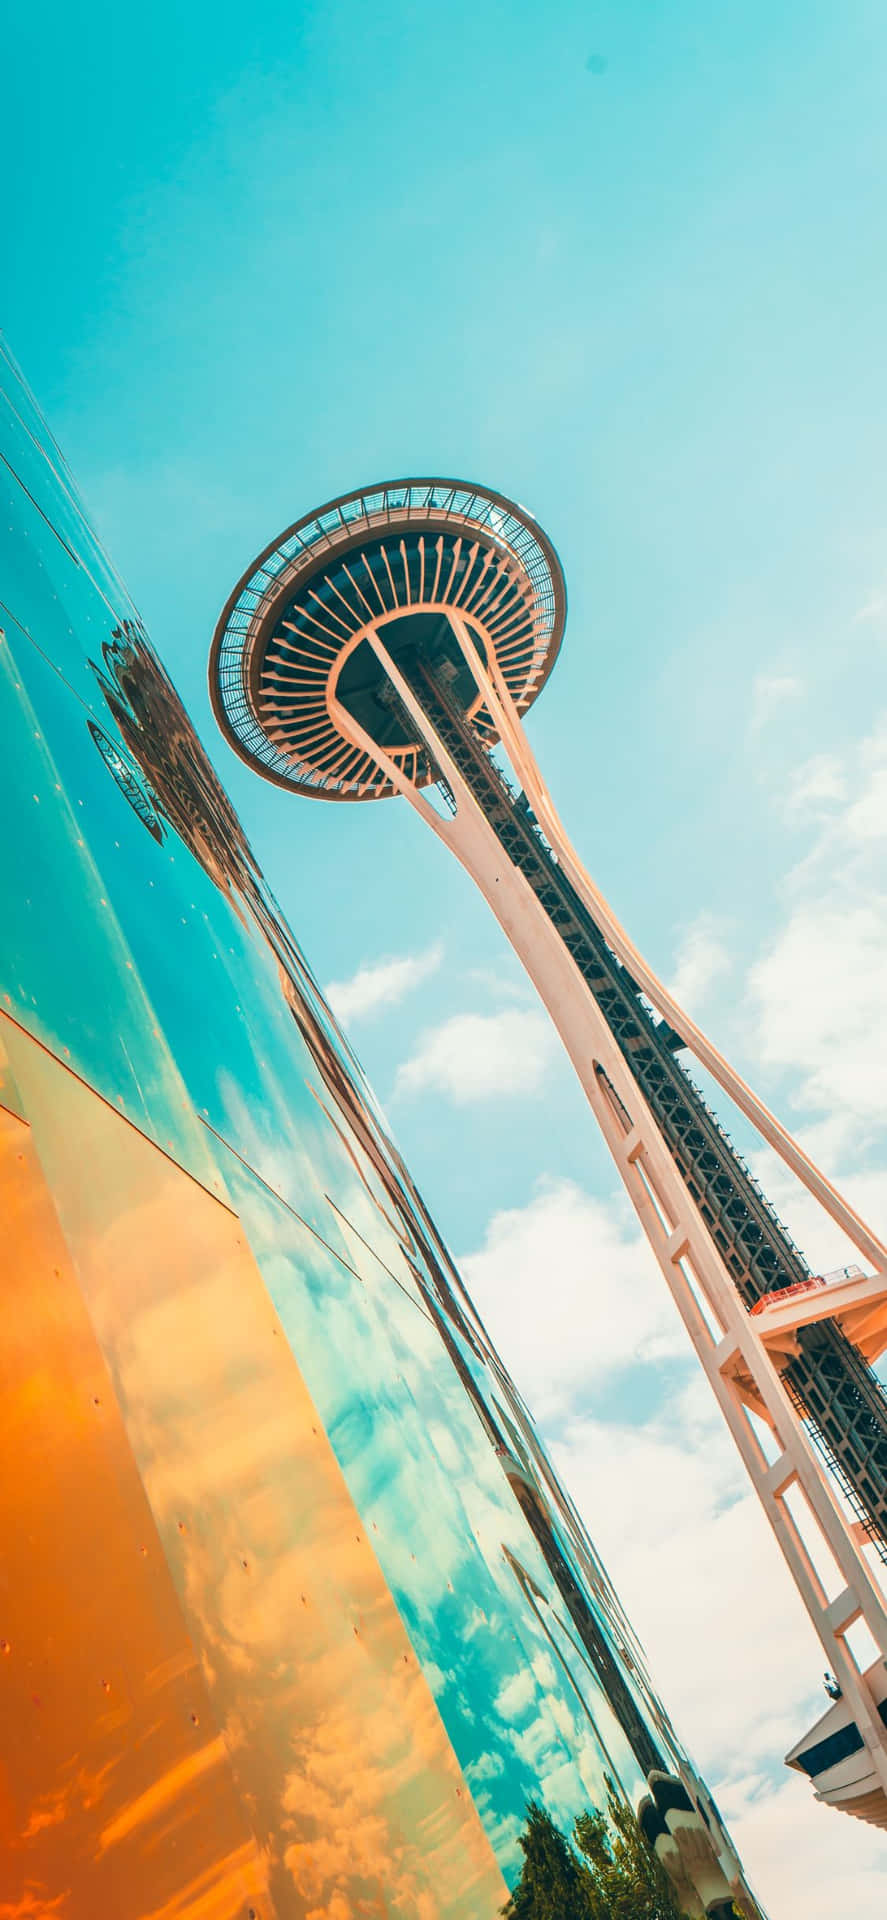 Njutav Den Vackra Utsikten Från Iphone X I Seattle.